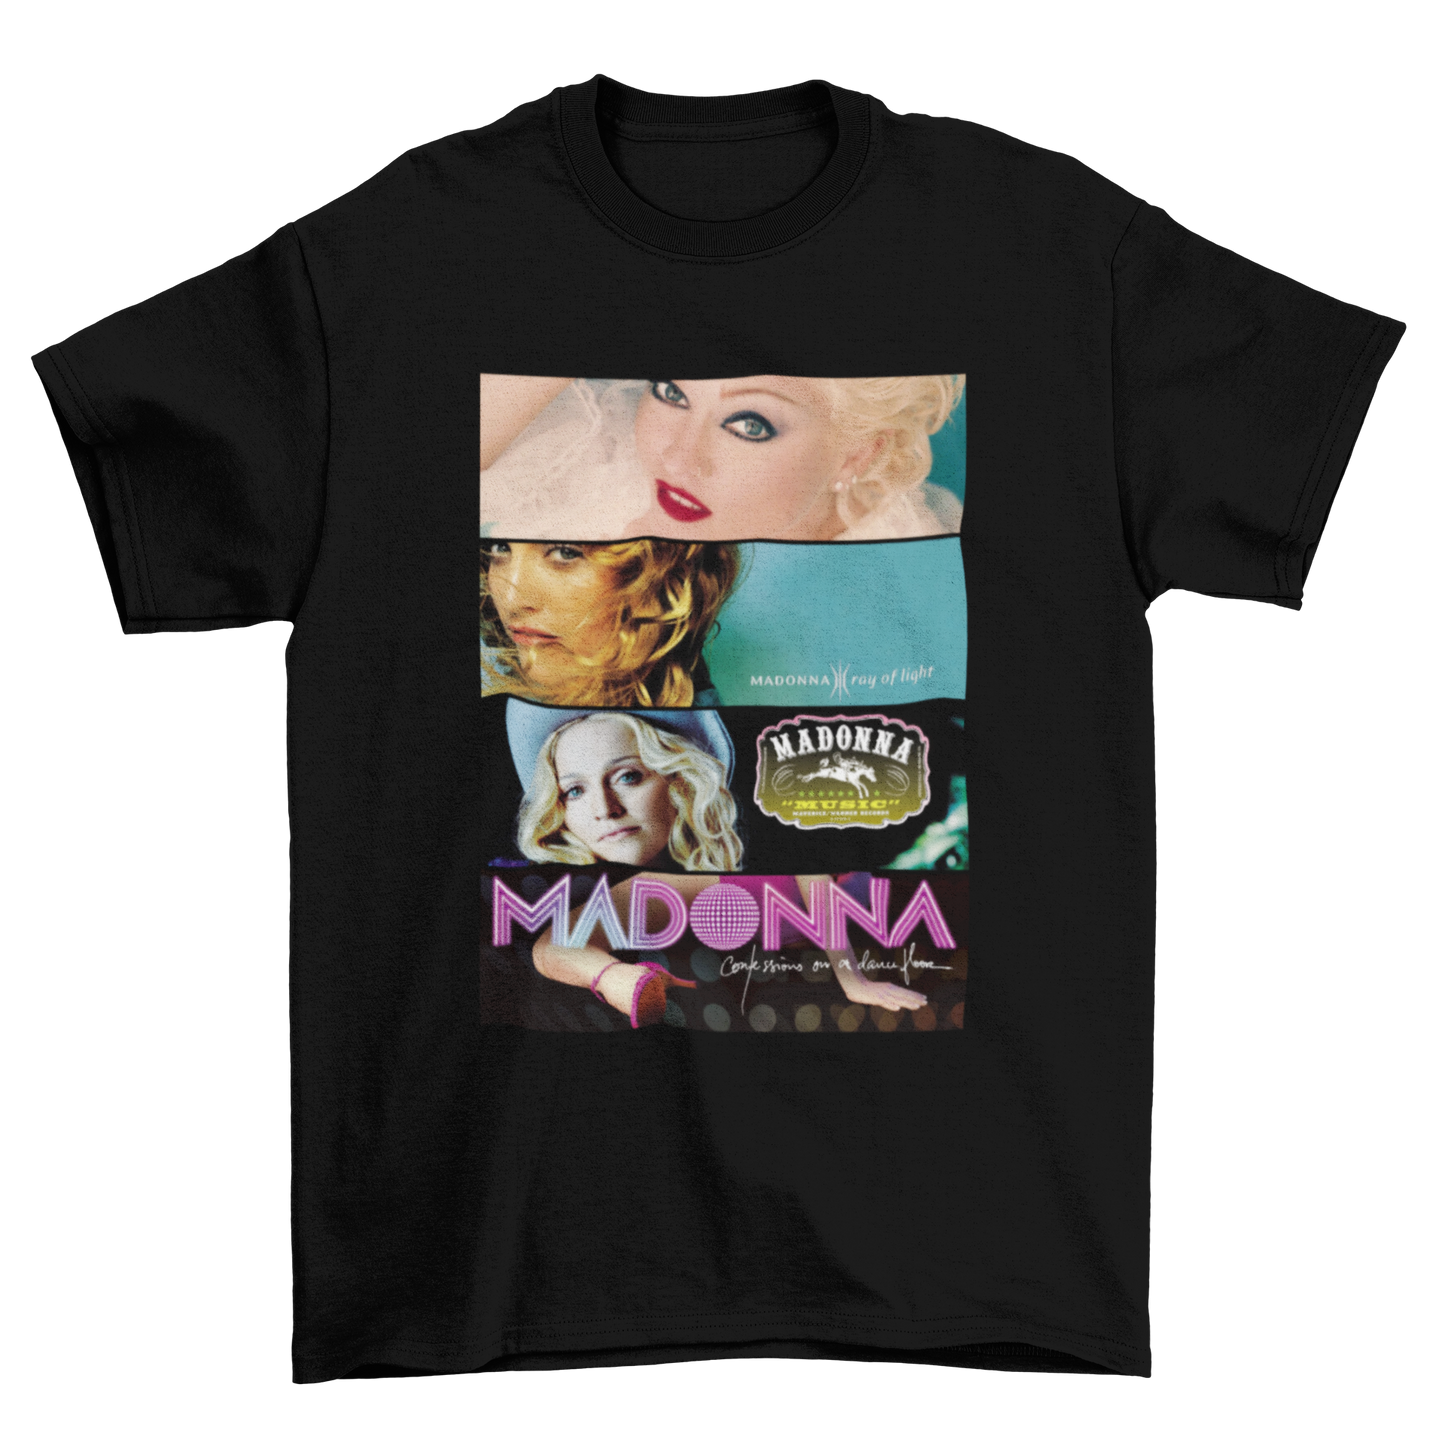 Madonna, Version 2 (Album Cover Tee)